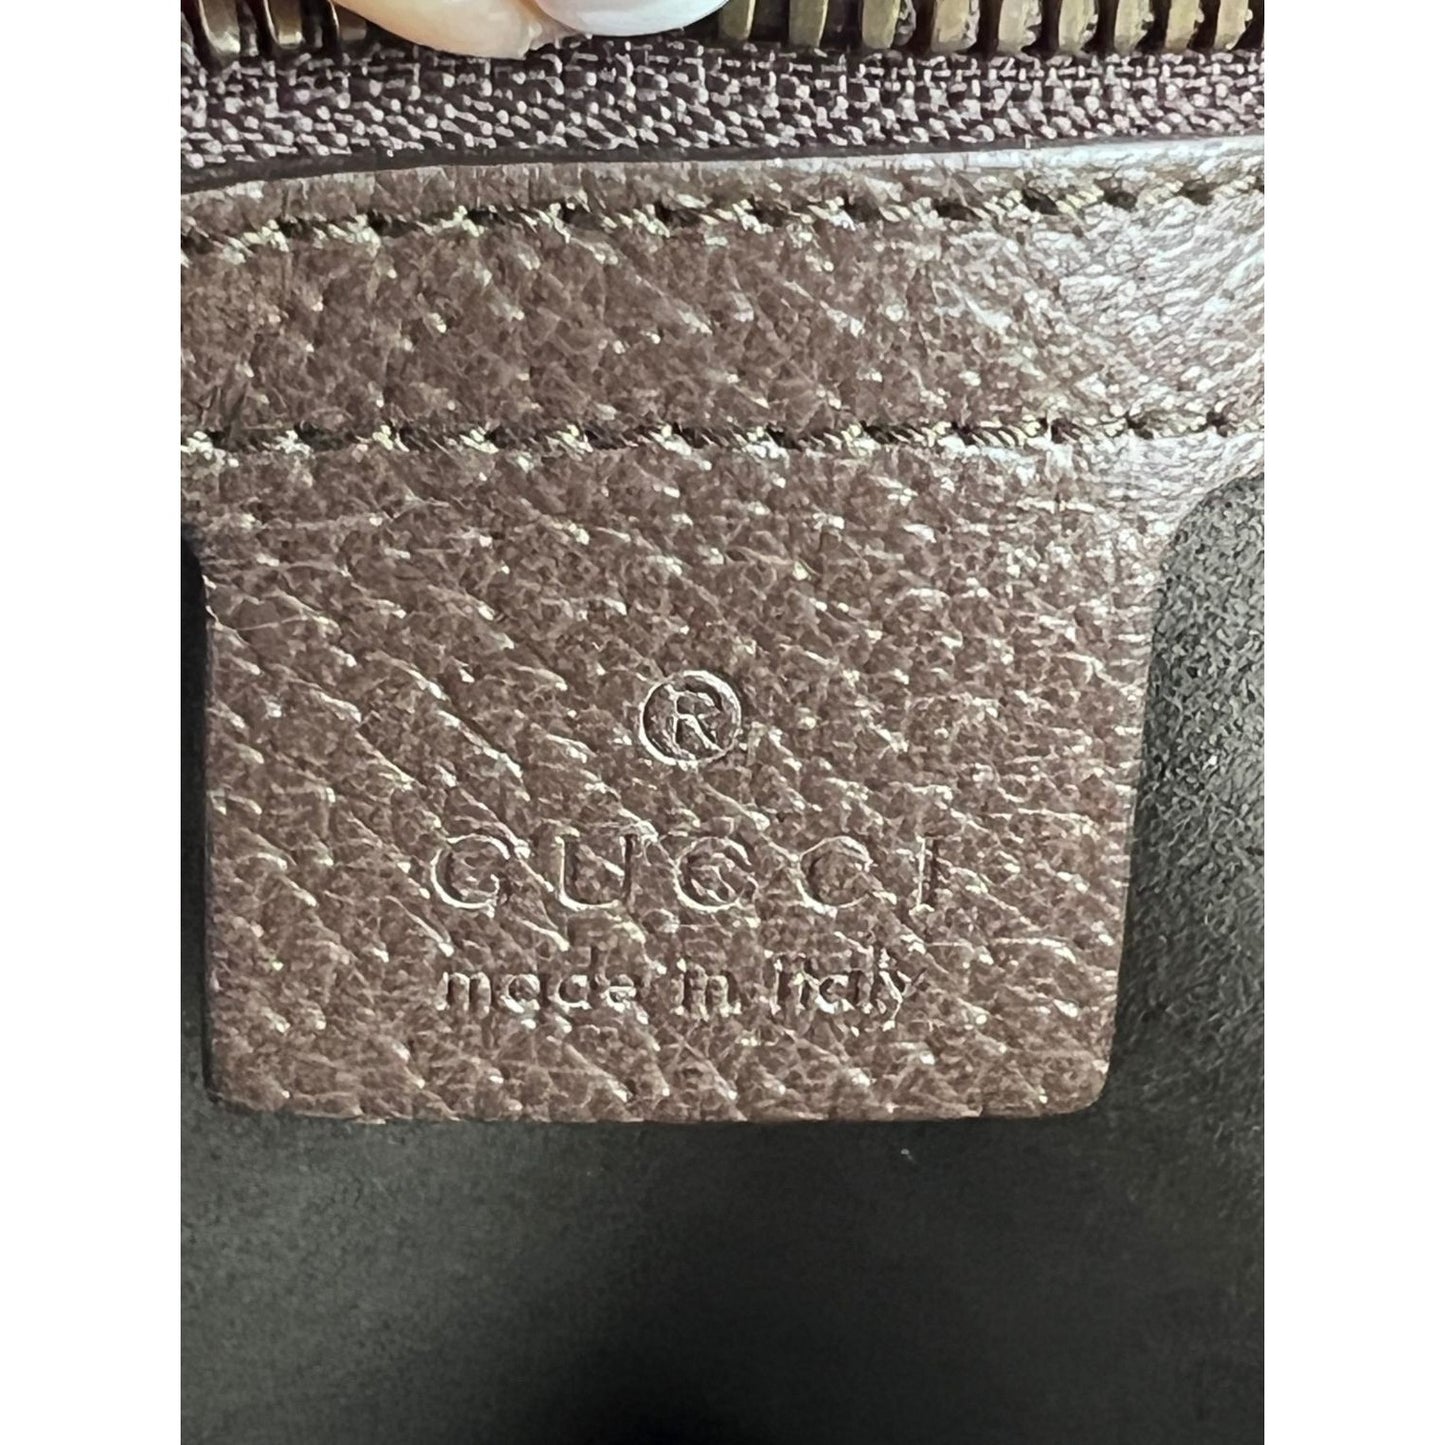 Brown Gucci Animalier GG Supreme Belt Bag – Designer Revival